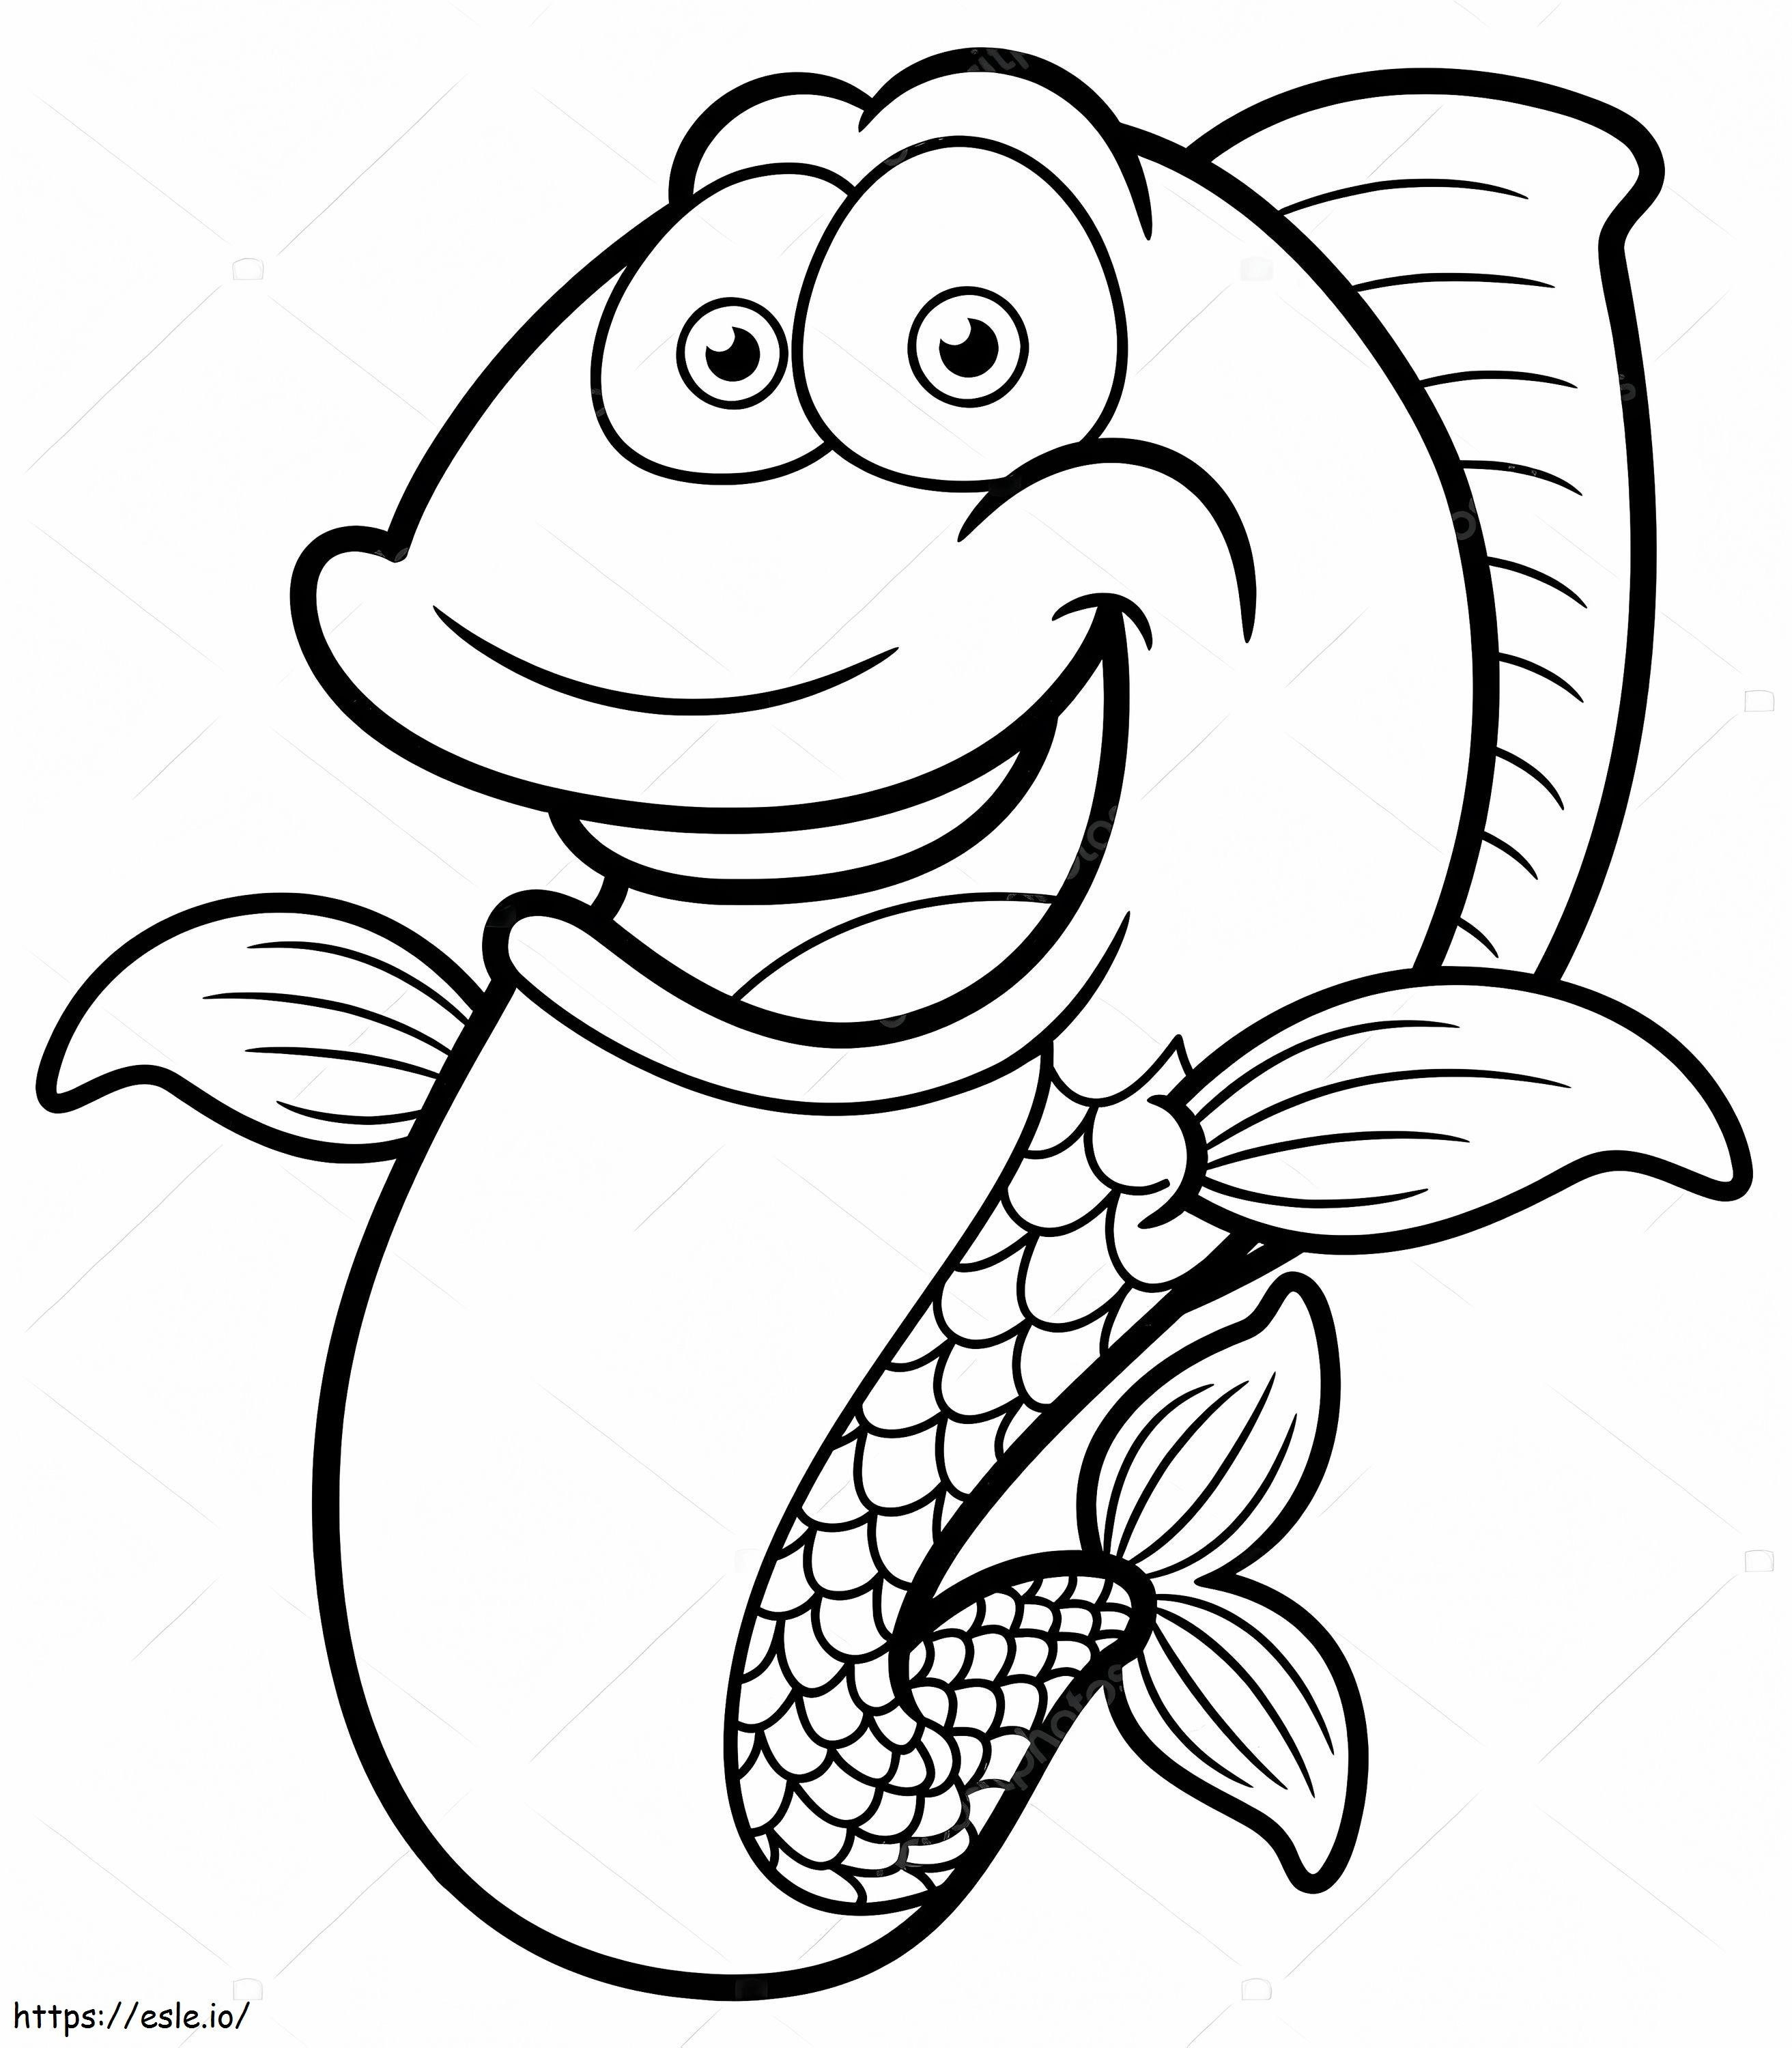 Lustiger Fisch-Cartoon ausmalbilder